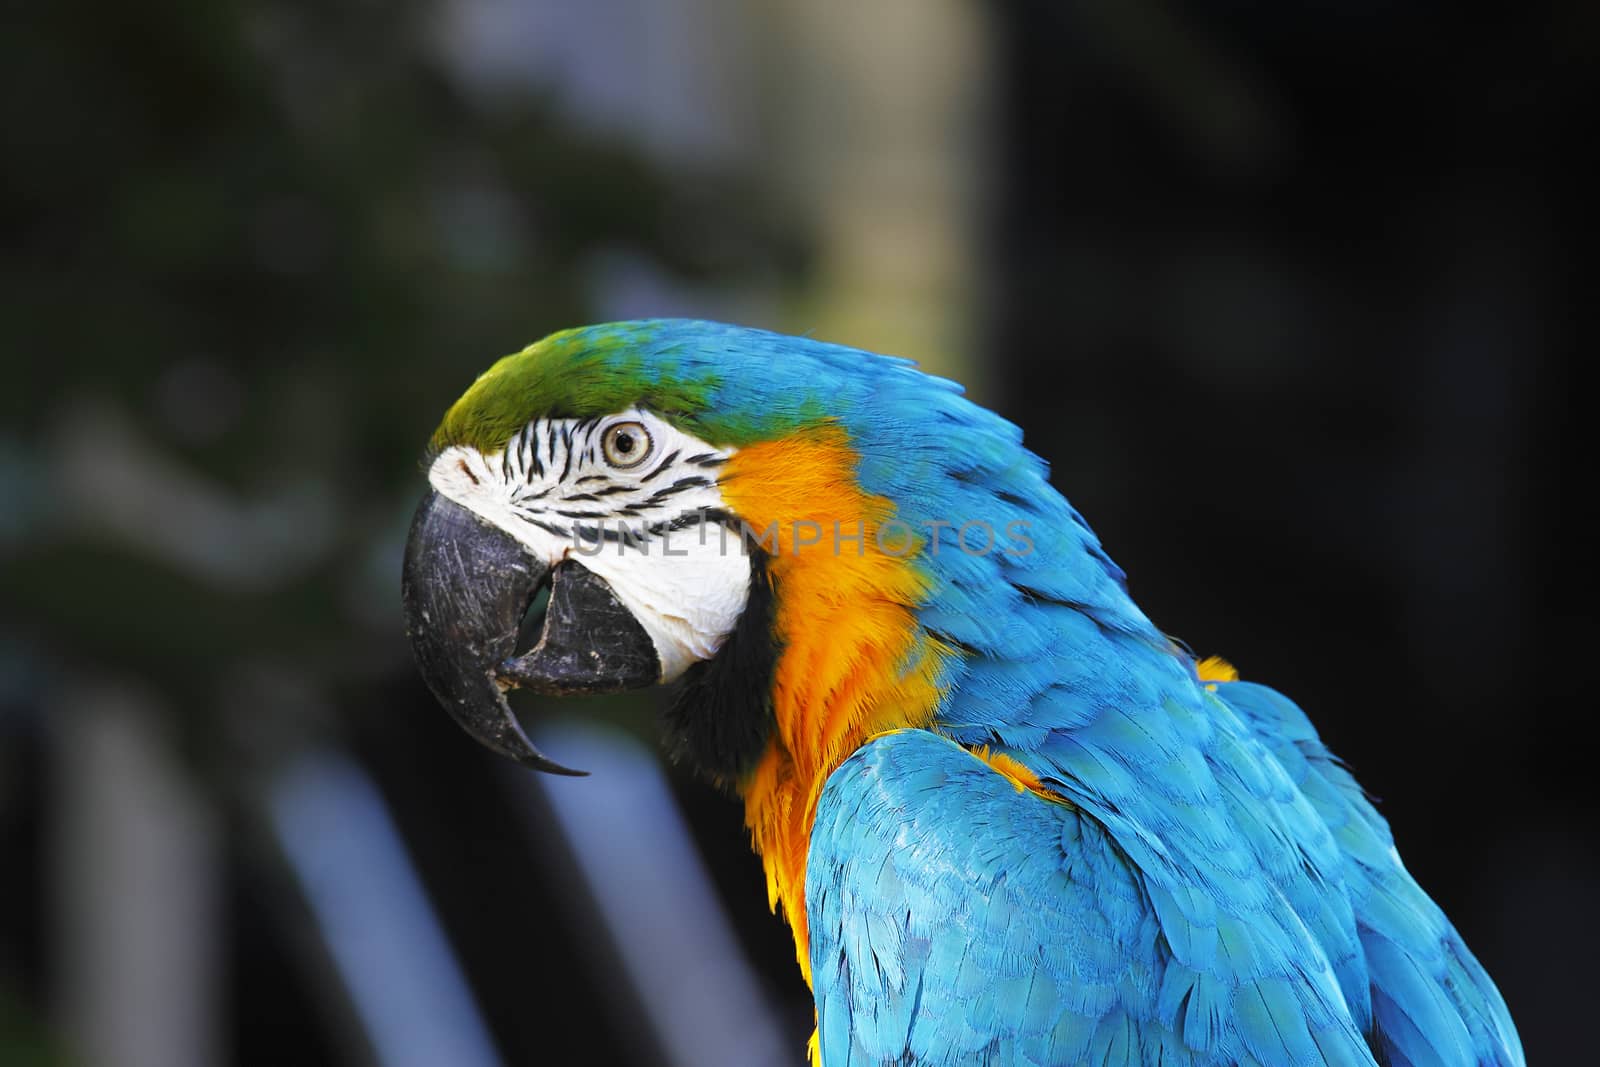 A portrait of a beautiful parrot